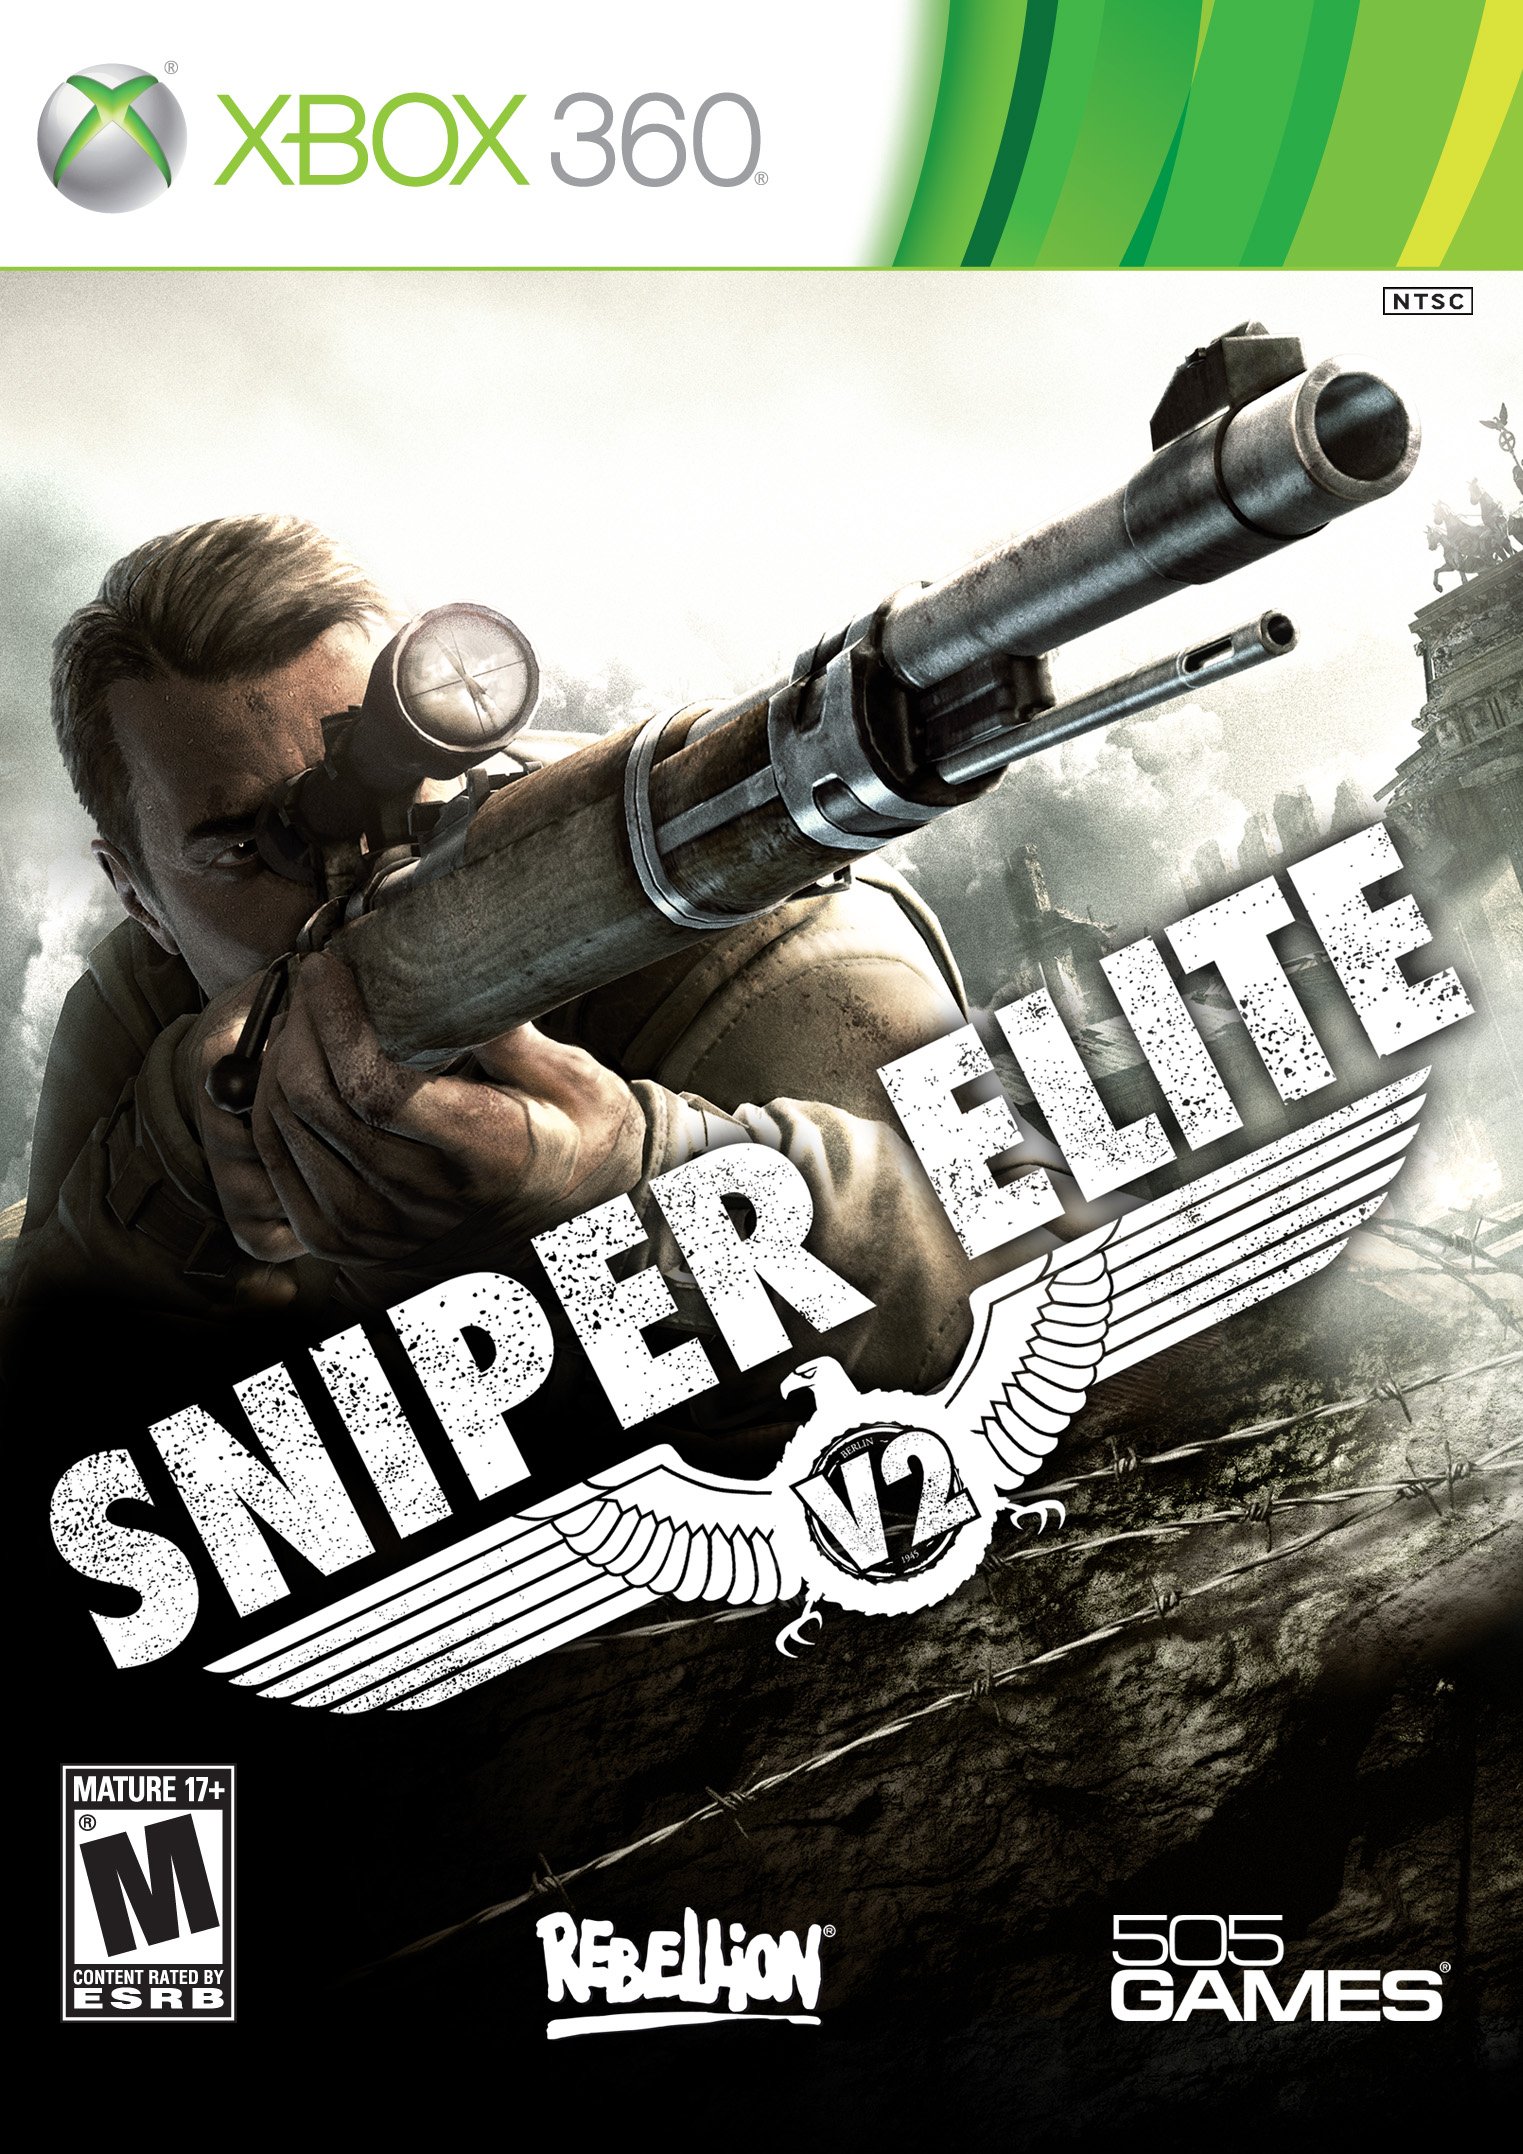 sniper elite 4 deluxe vs standard